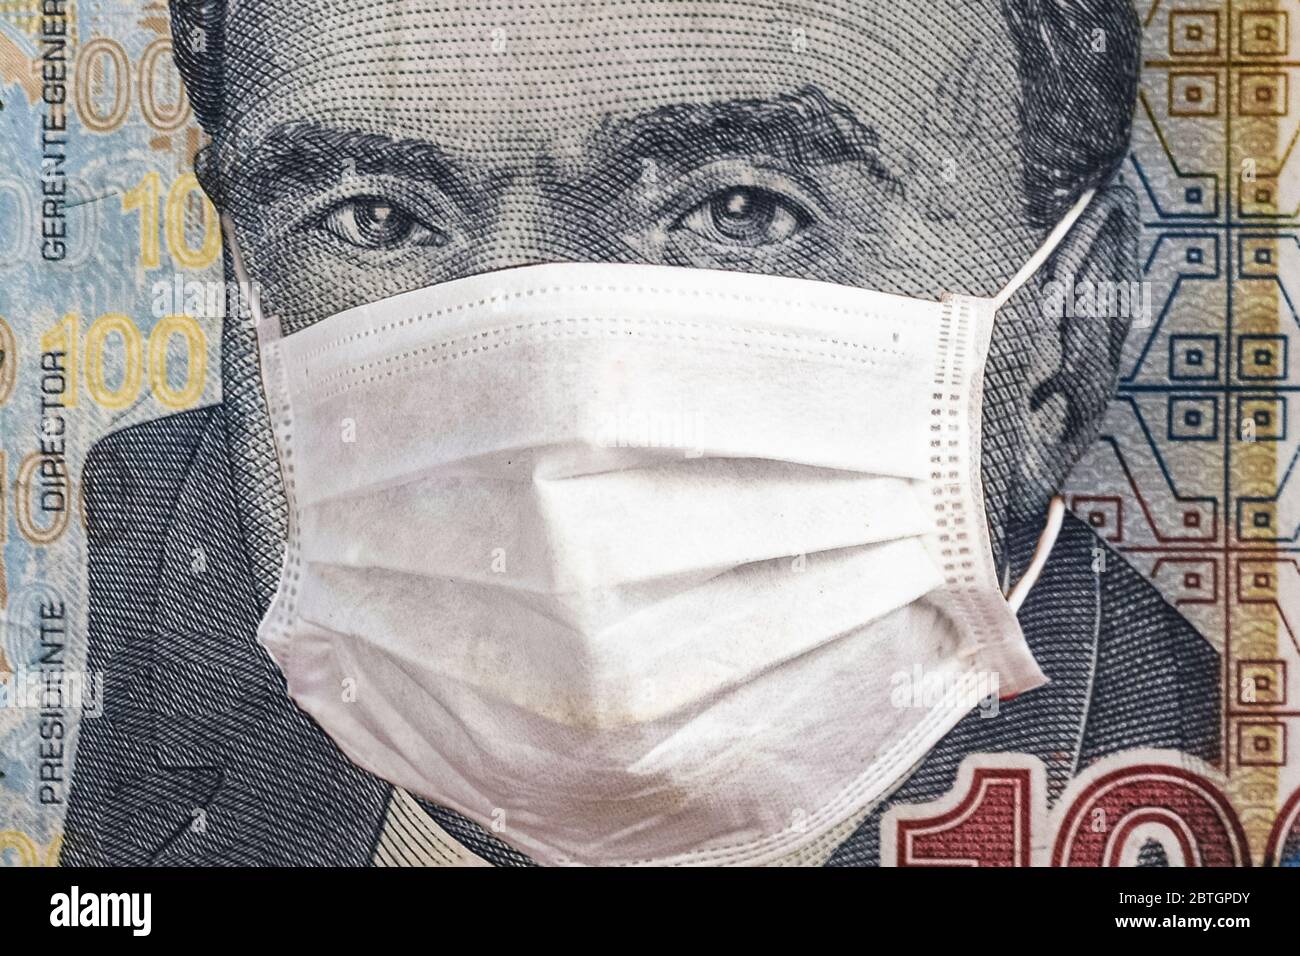 Konzept: Quarantäne in Peru, 100 Sohlen Banknote mit Gesichtsmaske. Wirtschaft und Finanzmärkte, die von einem Ausbruch des Corona-Virus und von Pandemien betroffen sind. Digitale Montage. Stockfoto